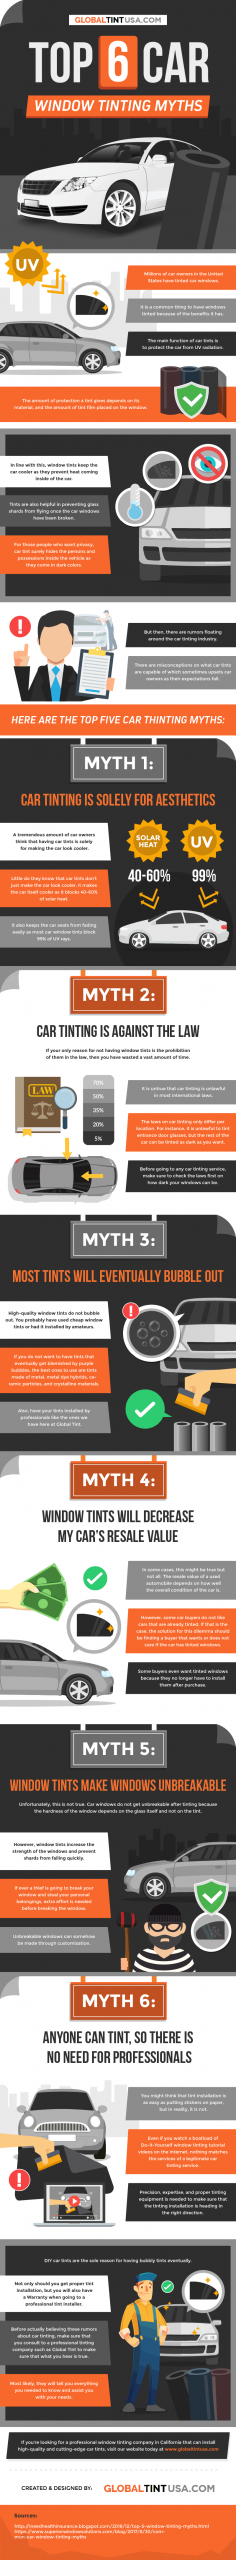 Top 6 Car Window Tinting Myths